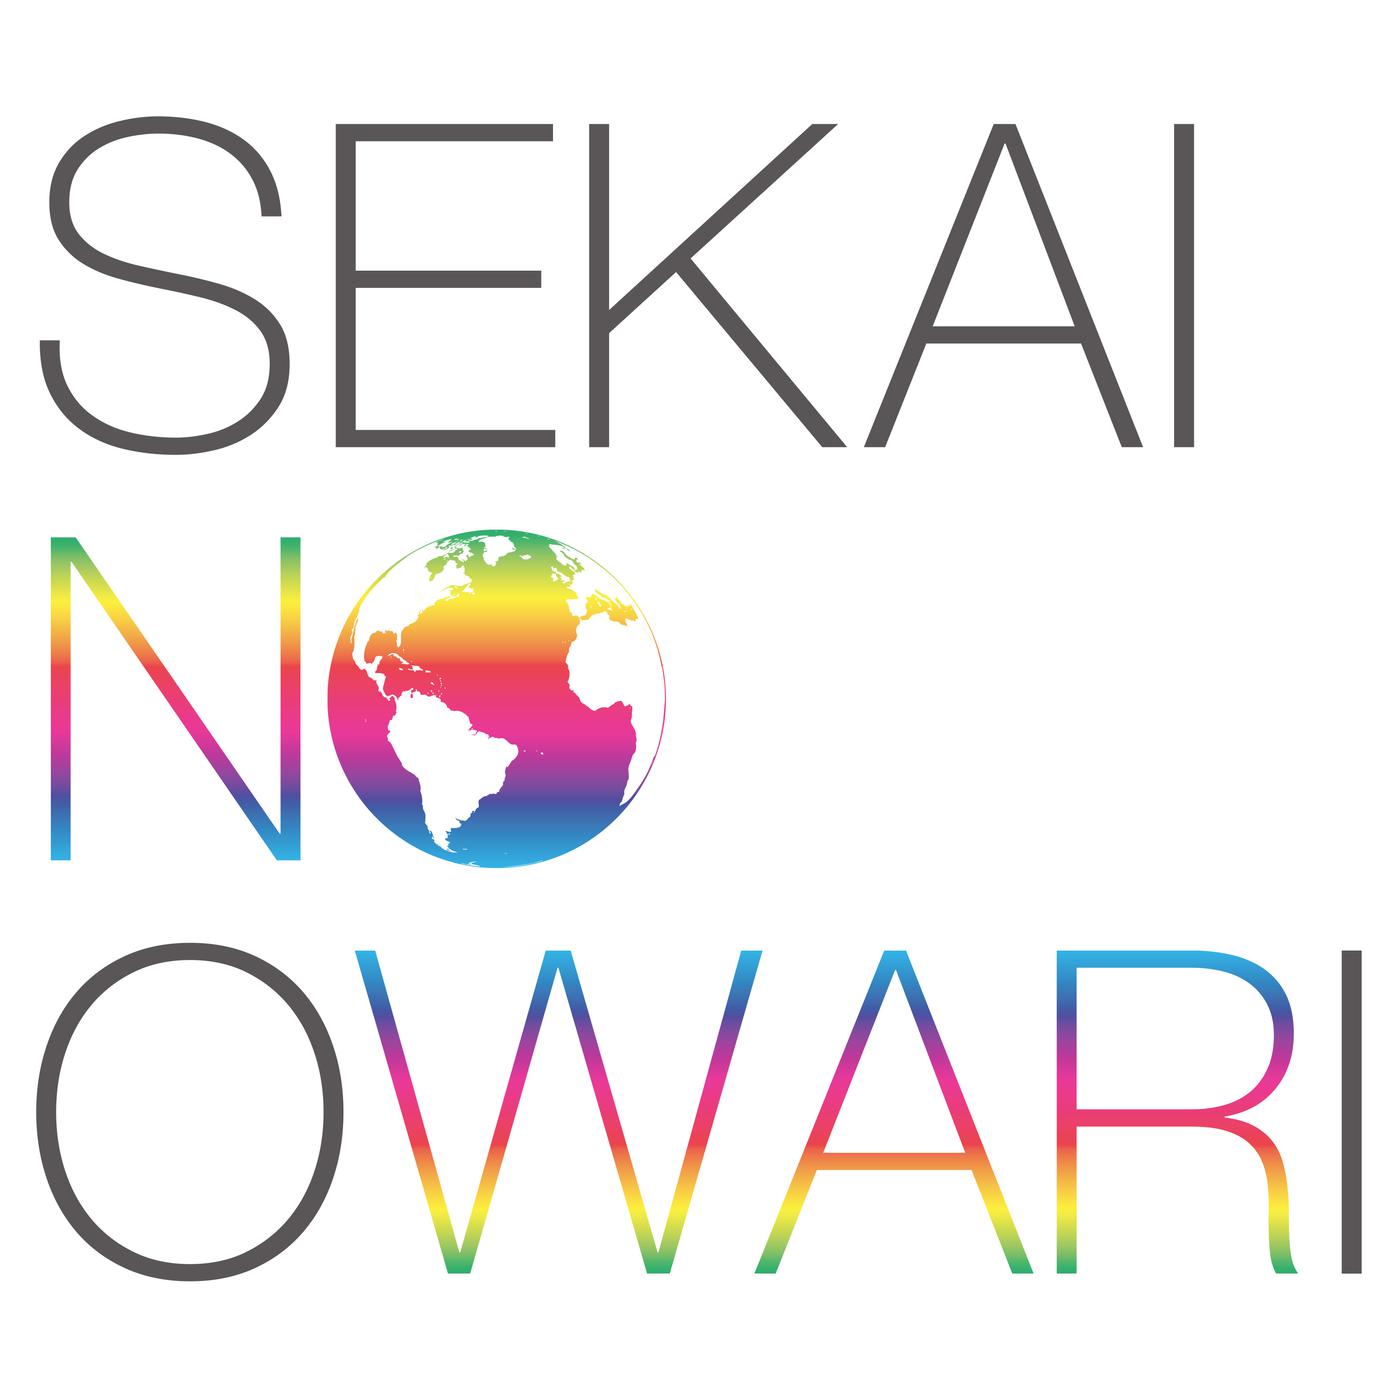 幻の命歌词 歌手Sekai no Owari-专辑EARTH-单曲《幻の命》LRC歌词下载